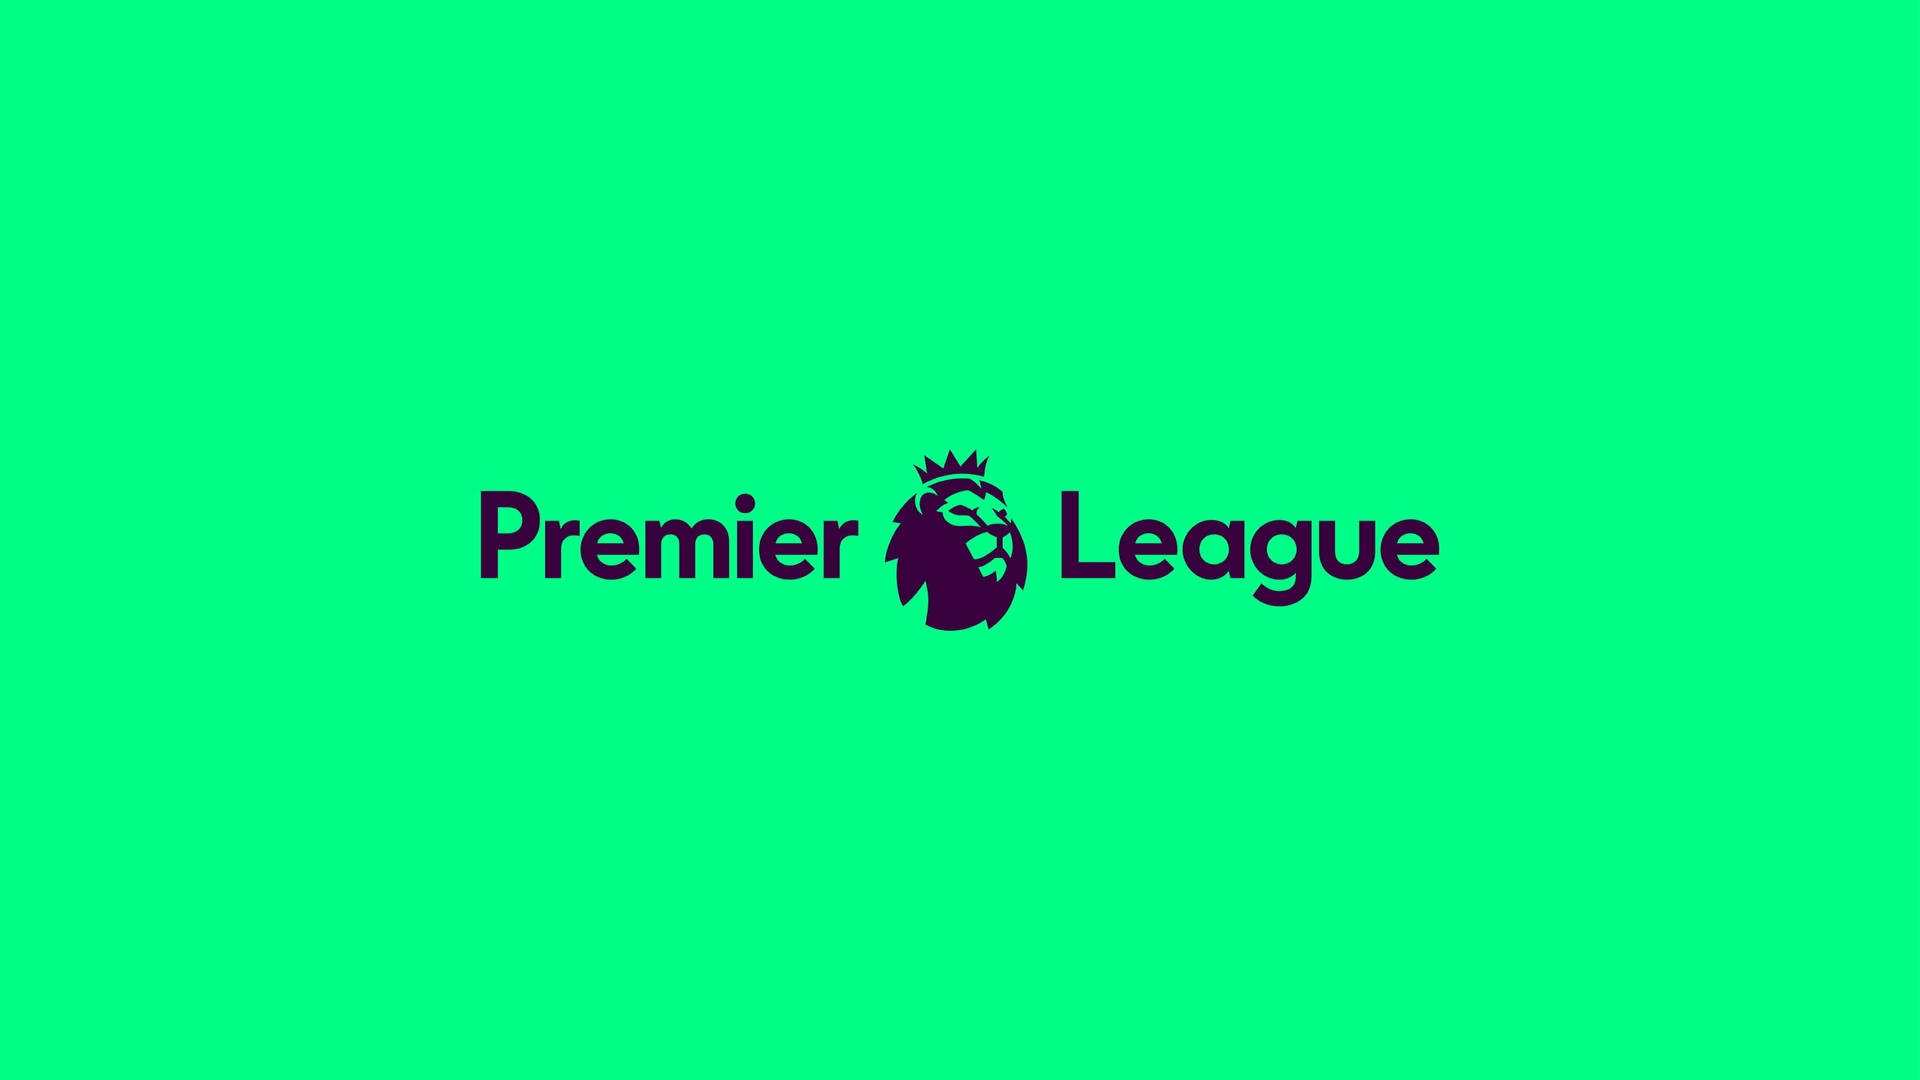 Premier League In Green